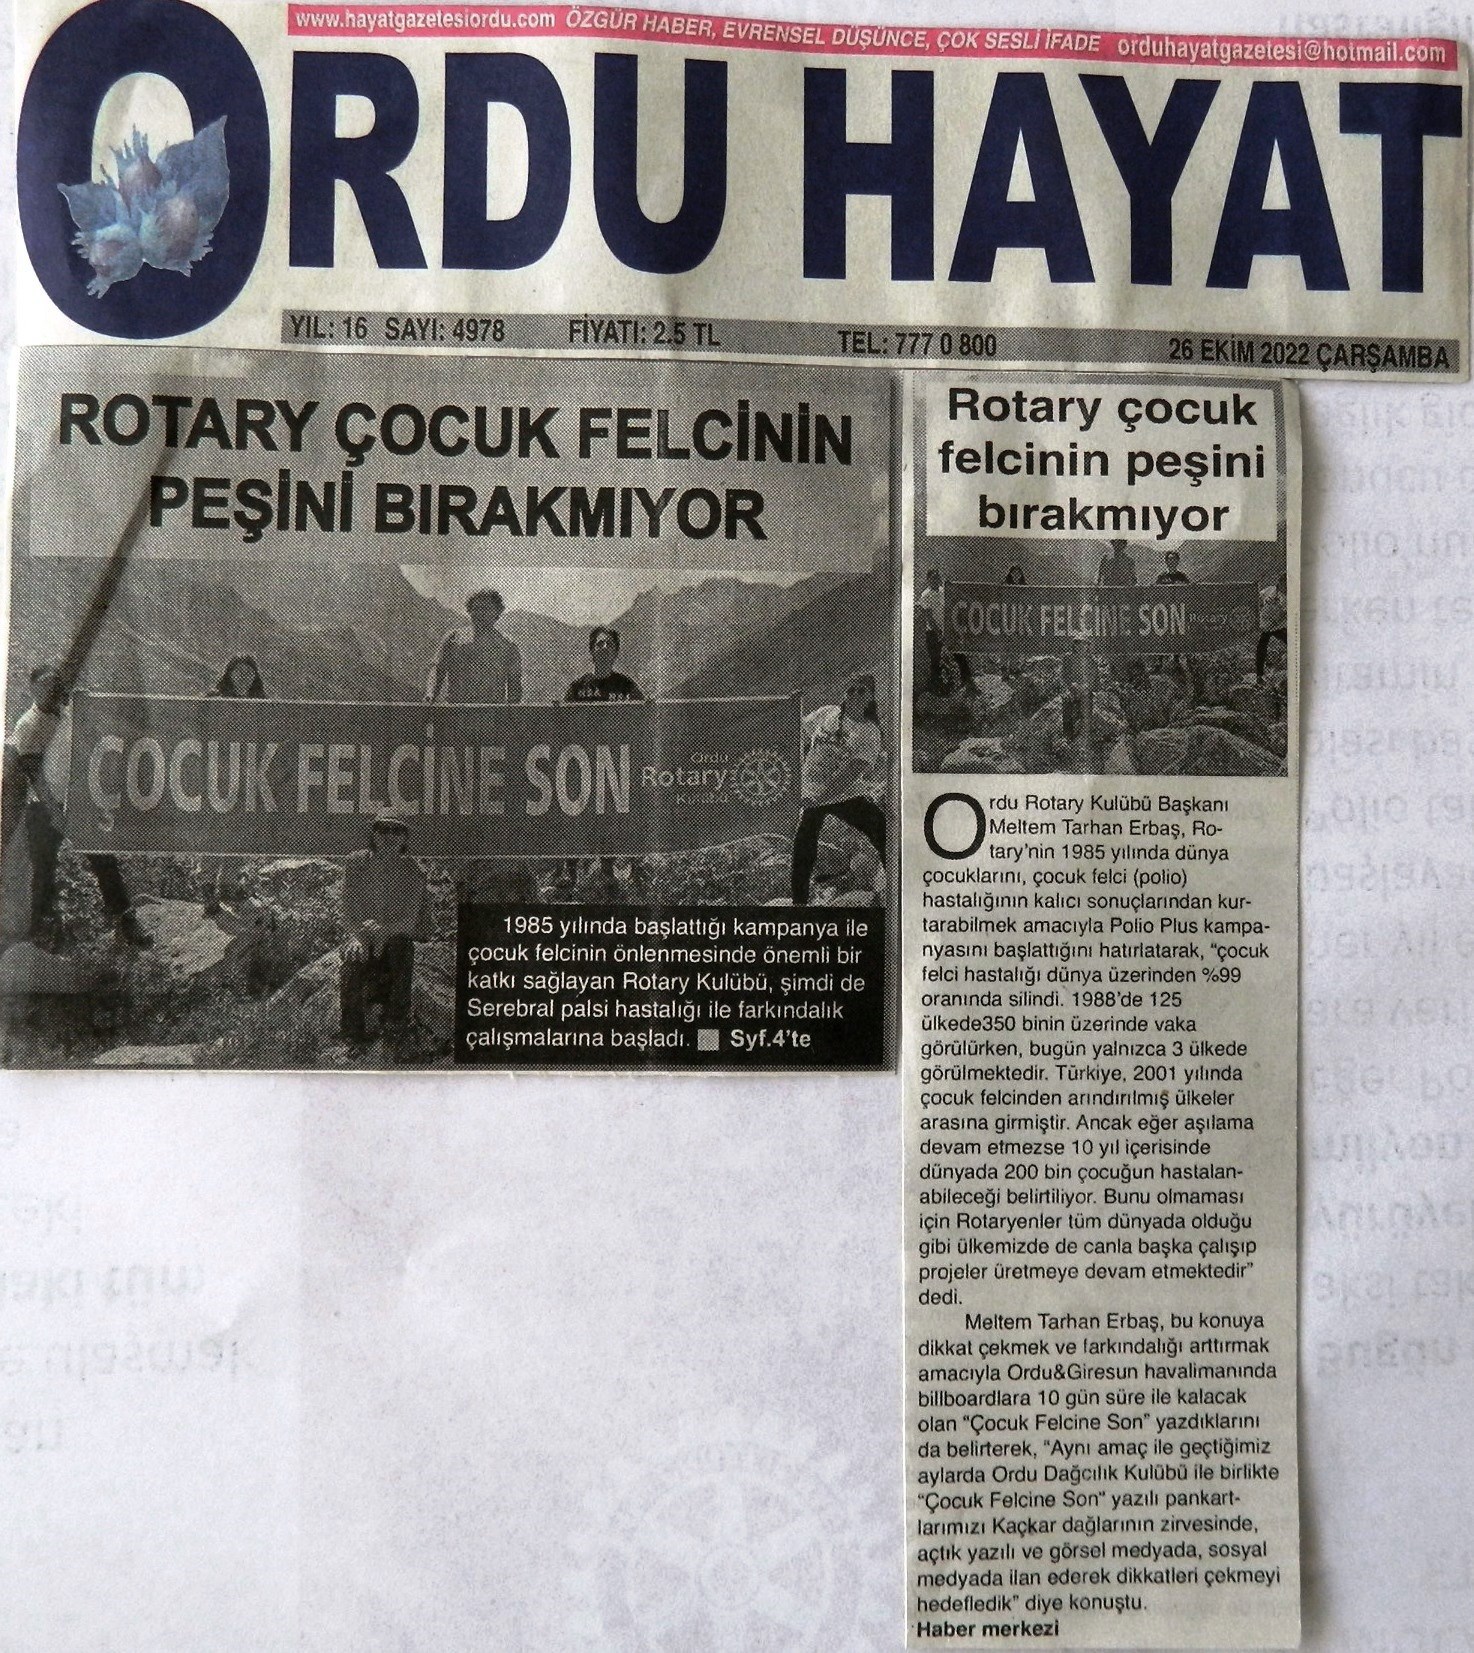 Ordu Rotary Kulübü Başkanı Rtn. Meltem Erbaş'ın Polio ile ilgili mesajı basında yer aldı.